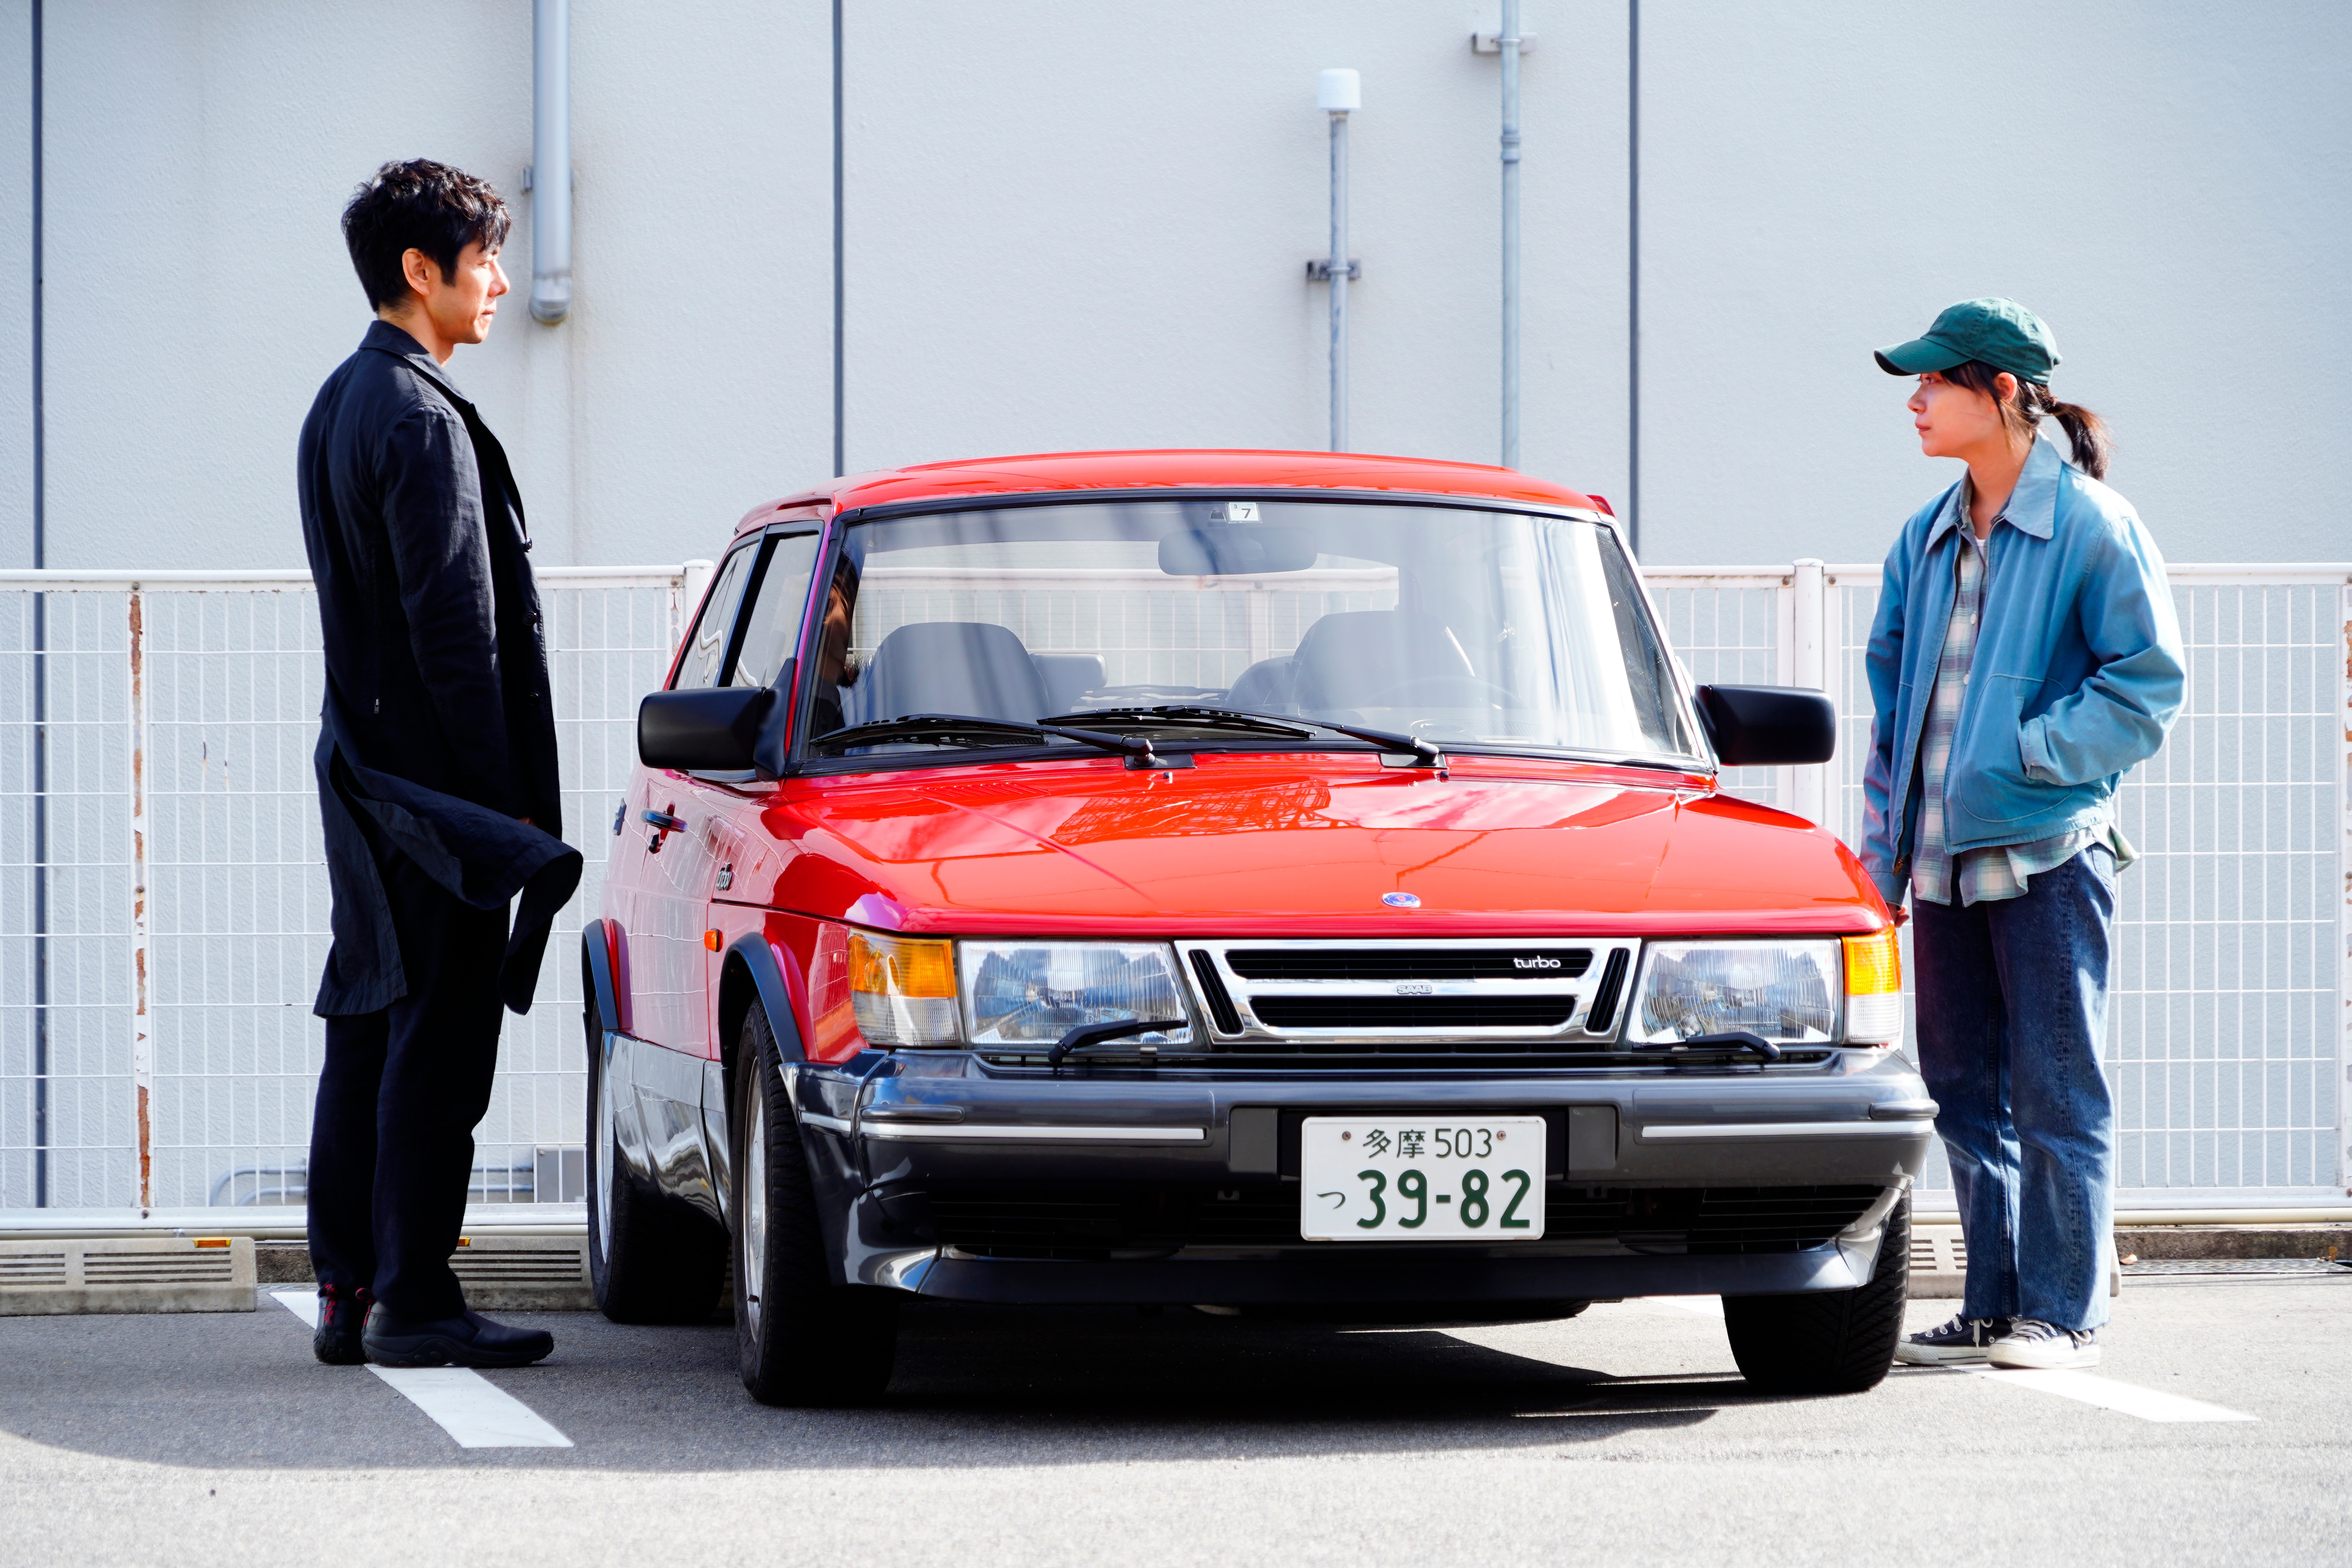 Drive My Car Ryusuke Hamaguchi